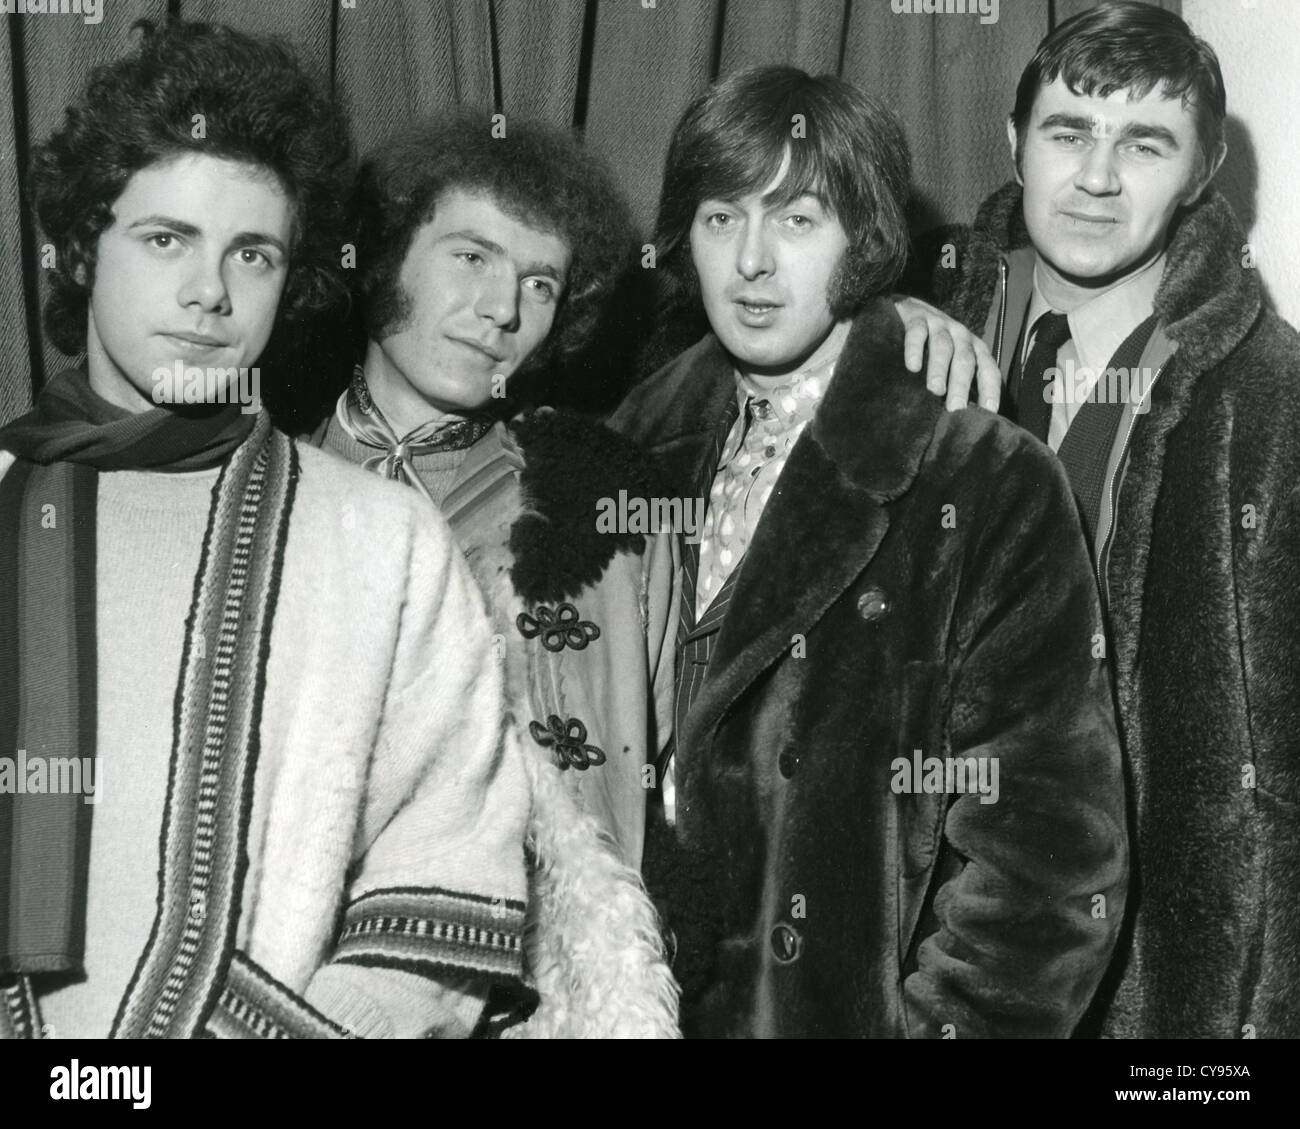 SPENCER DAVIS GROUP UK pop group en décembre 1967. Voir la description ci-dessous pour les noms. Photo Tony Gale. Banque D'Images